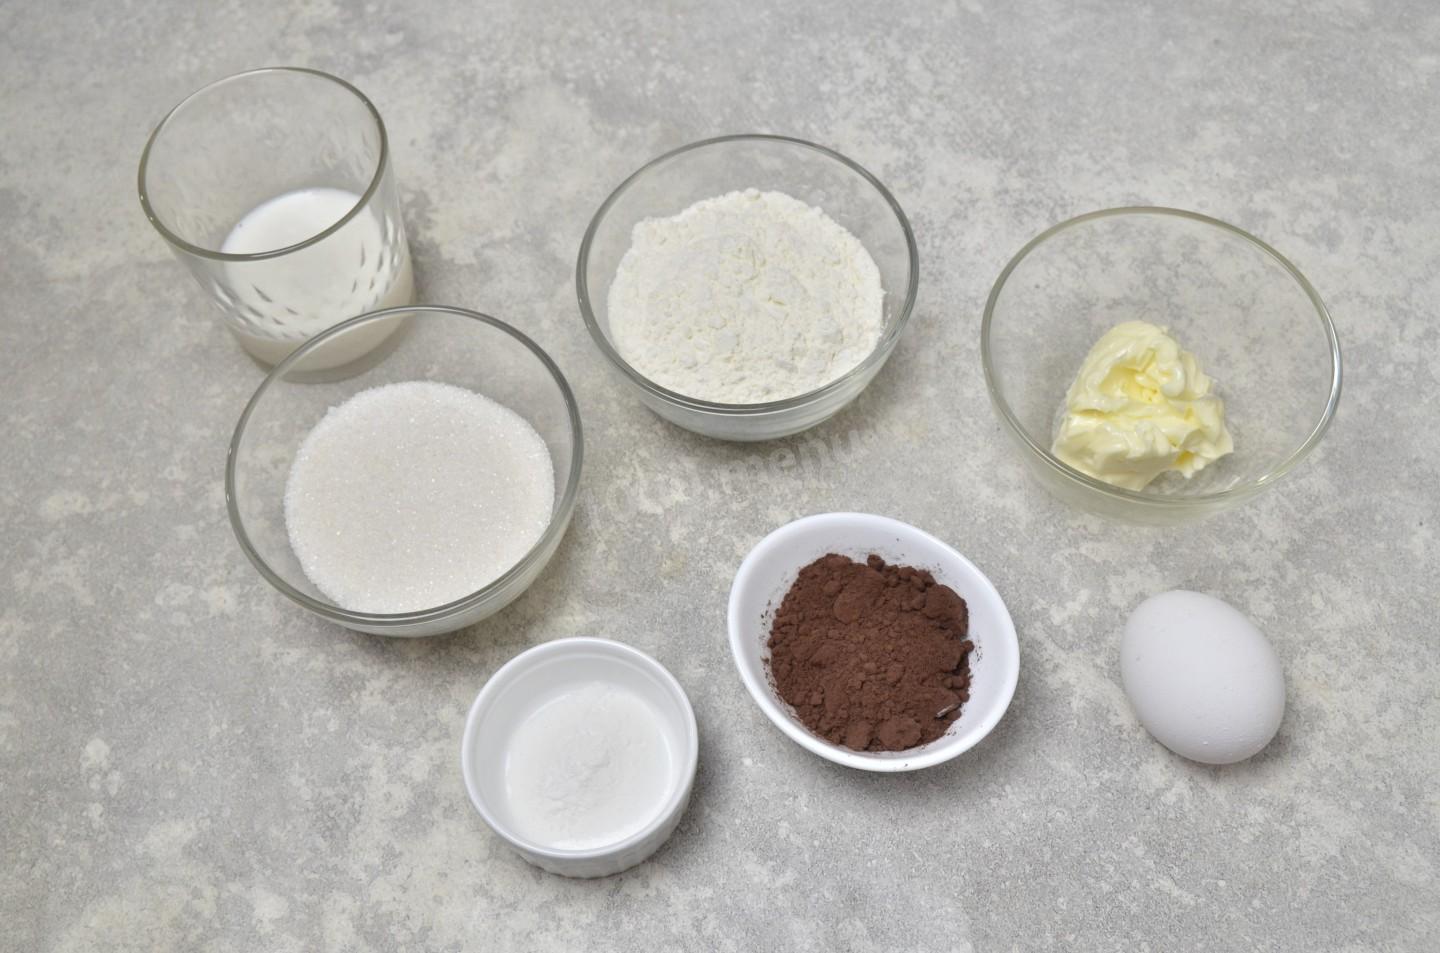 Мука сахар яйцо масло что приготовить. Как сделать шоколад с солью. Фото для рецепта соль шоколад сахар сливки 4 яйца. Рецепт для толстый стать.